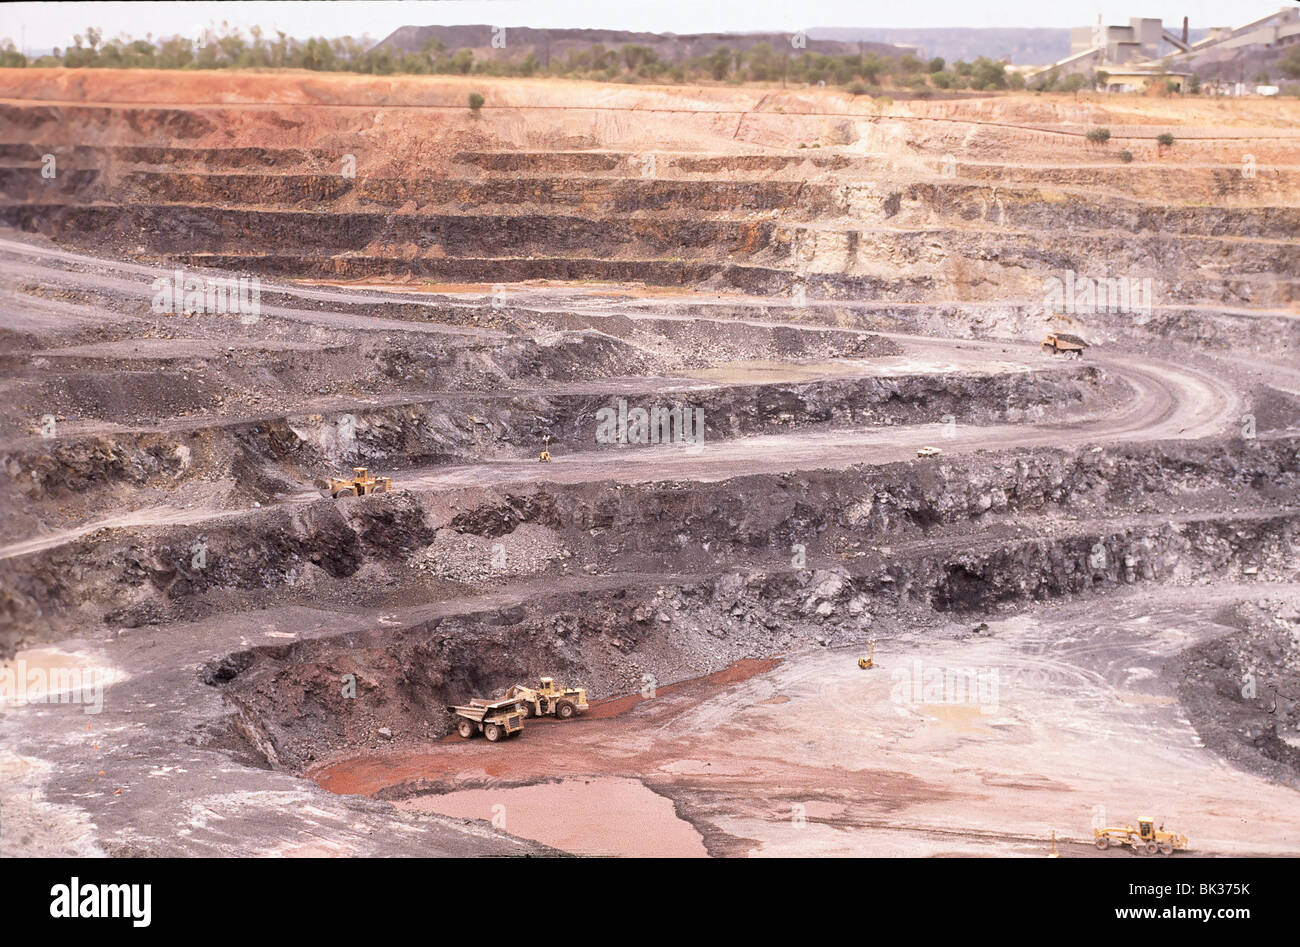 Open-pit uranium mine in Kakadu National Park, Australia Stock Photo